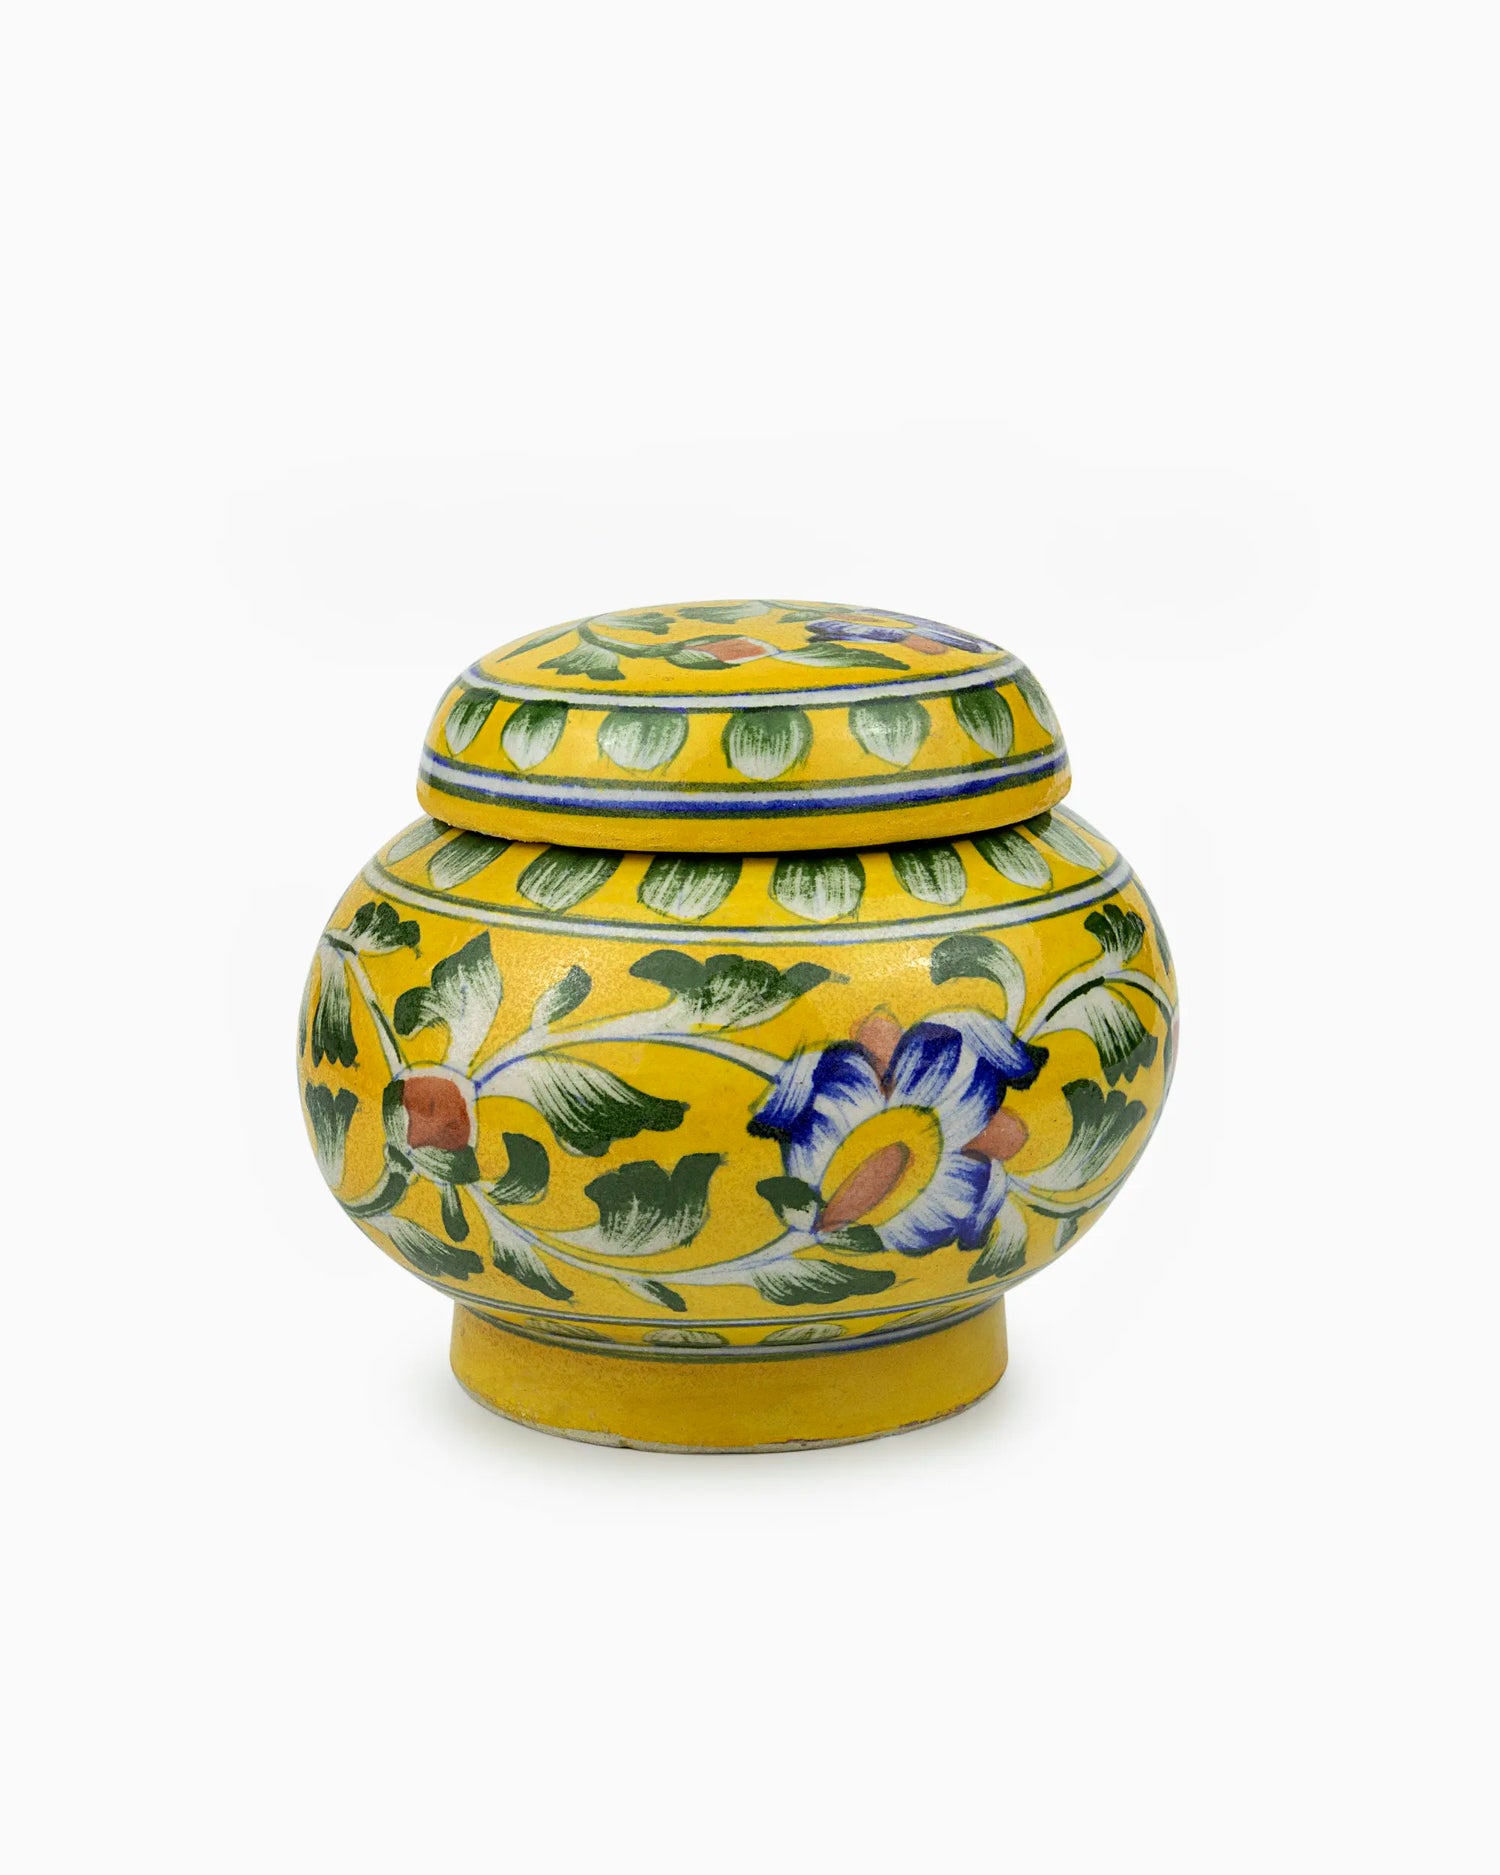 Decorative Ceramic Container Jar with Lid